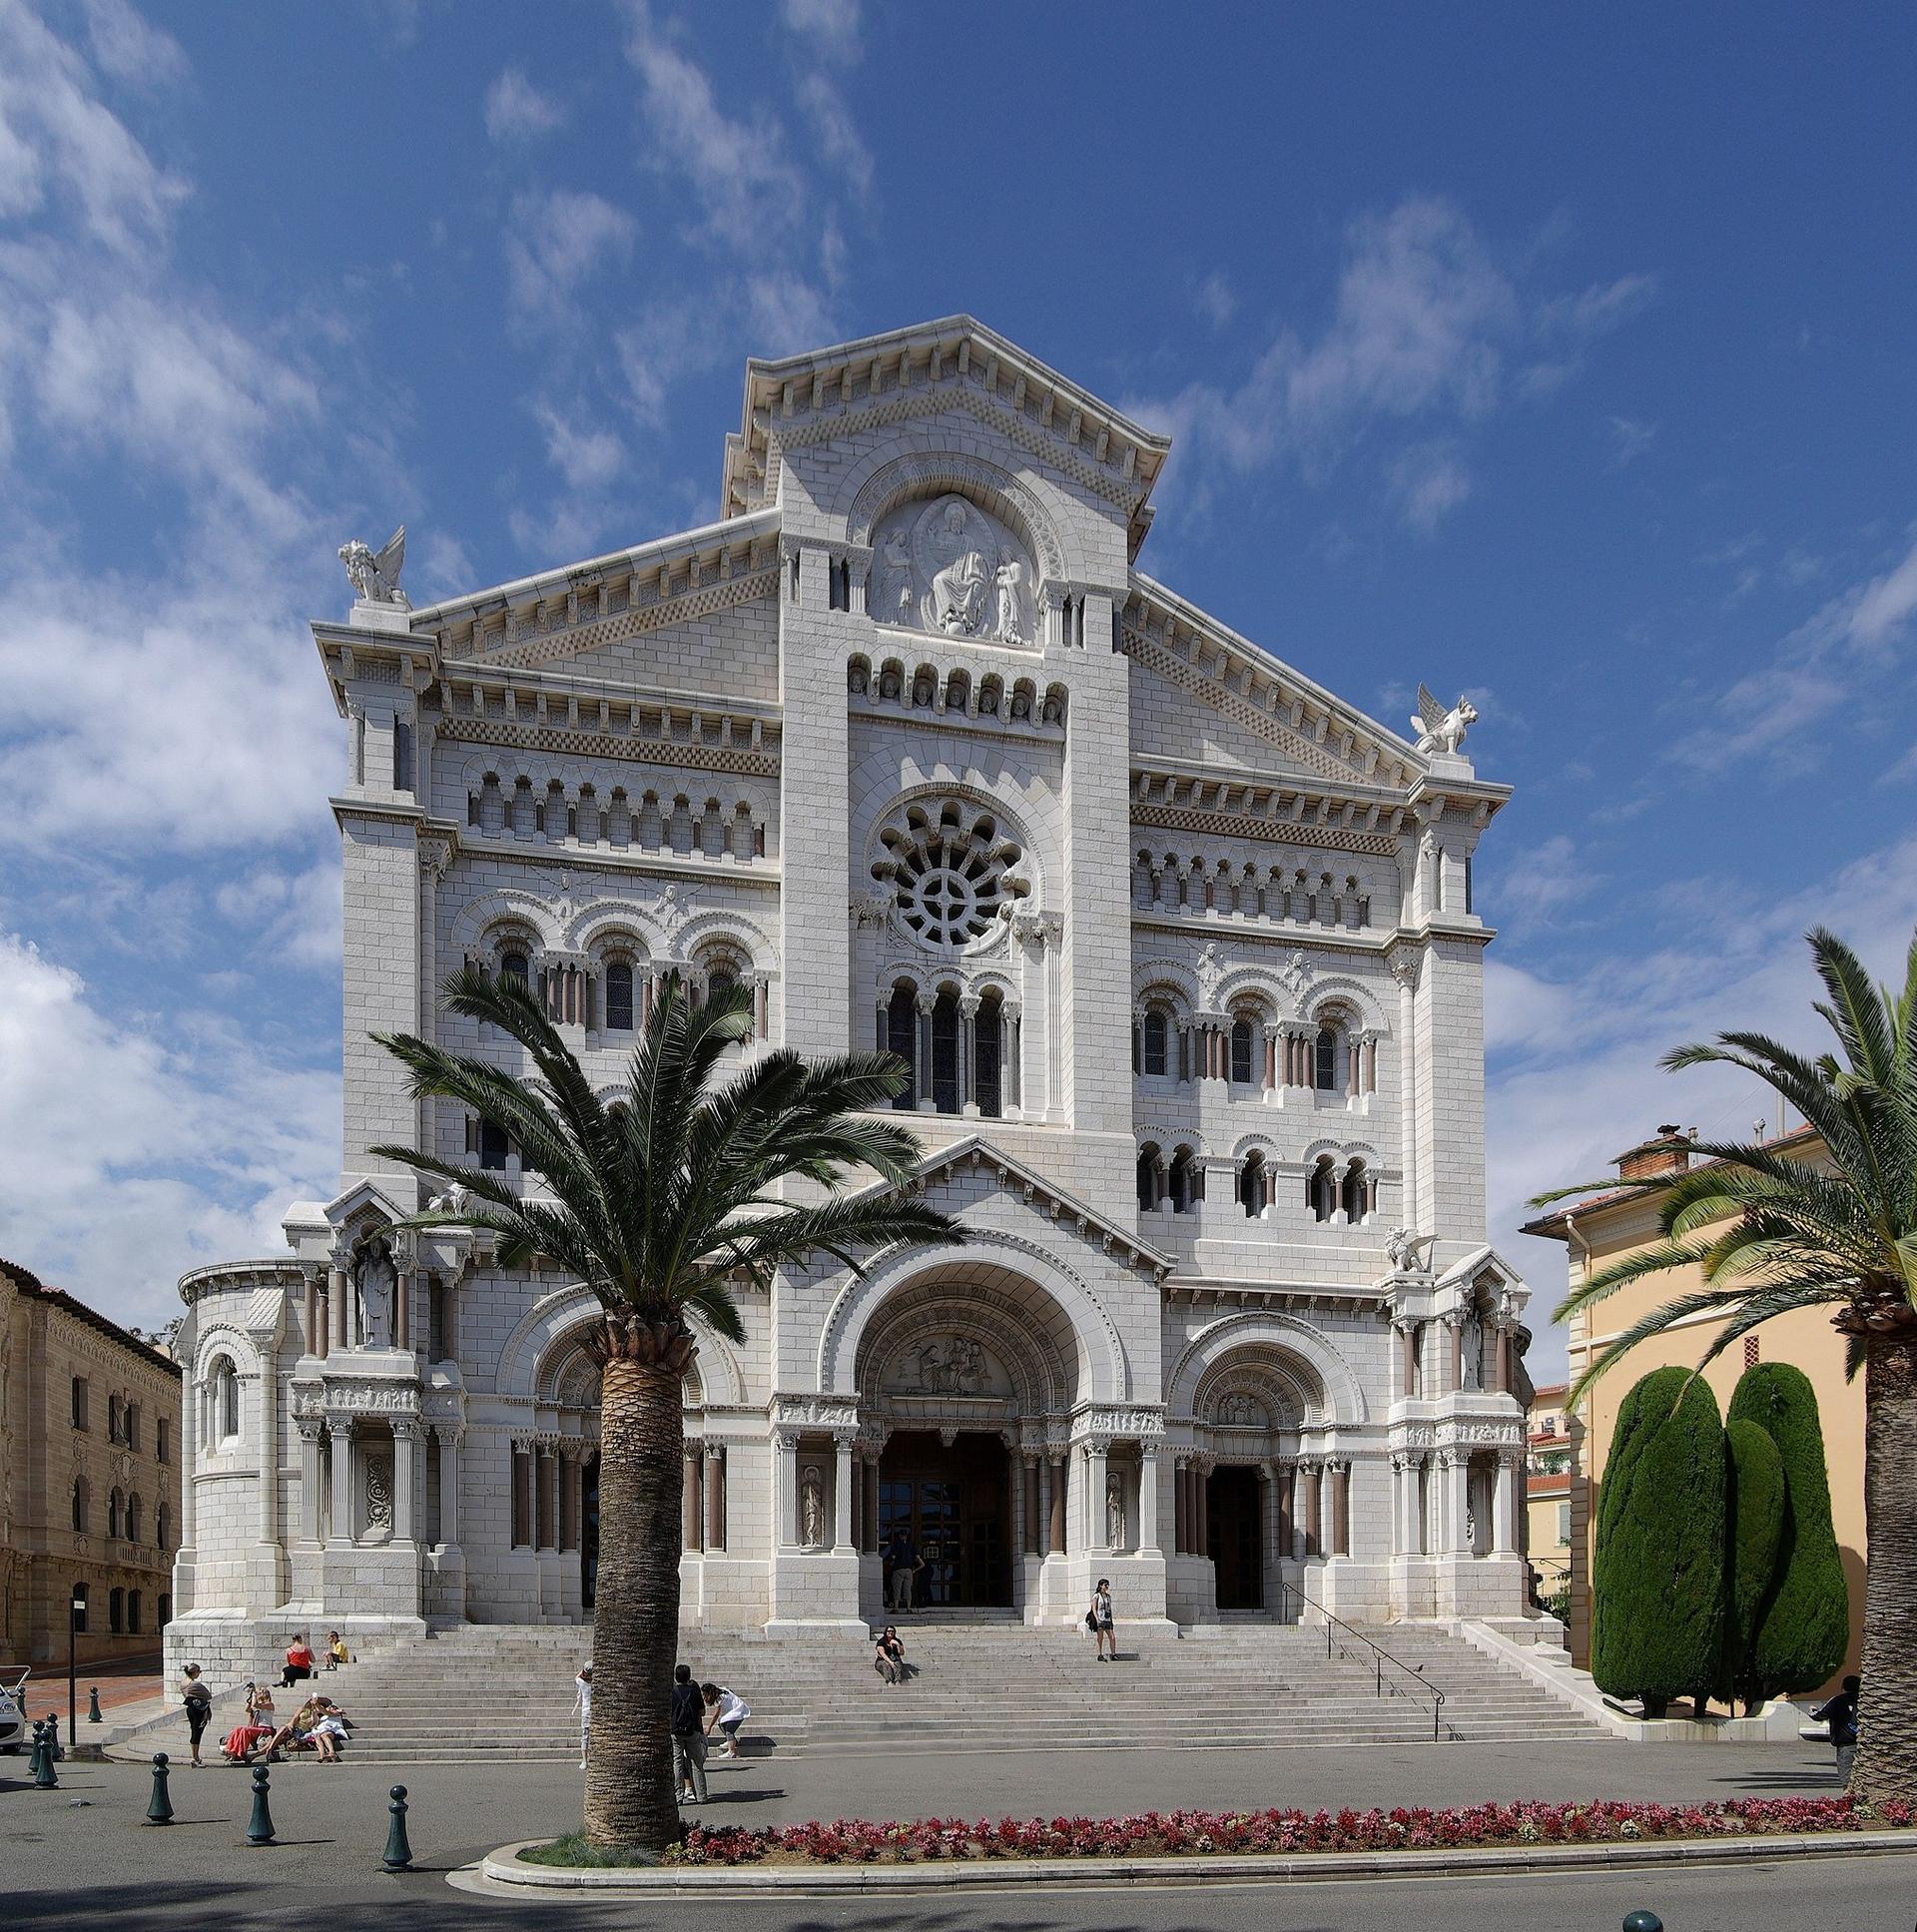 Μονακό Καθεδρικός Ναός του Αγίου Νικολάου στο Μονακό